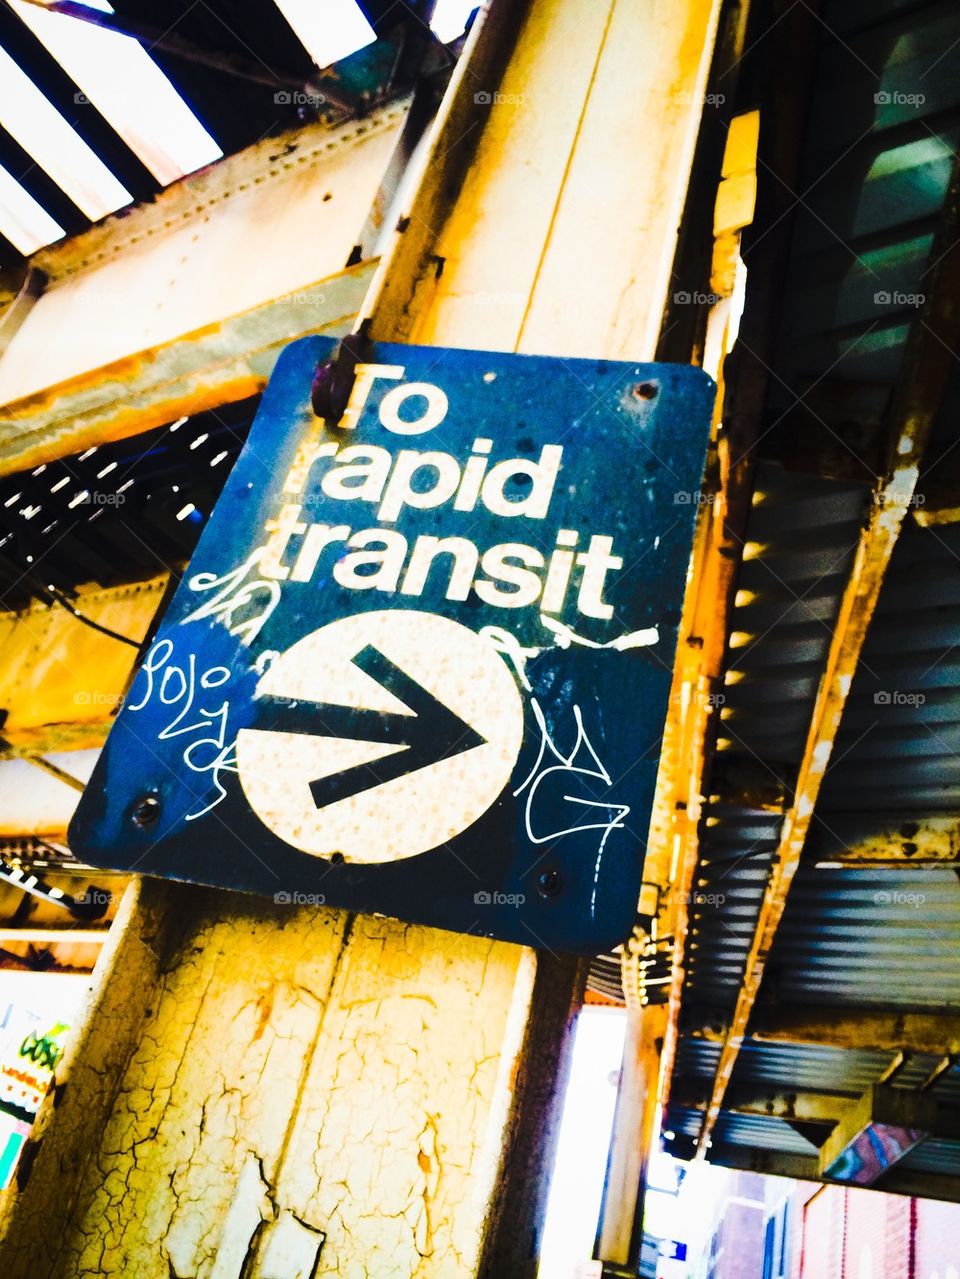 To rapid transit